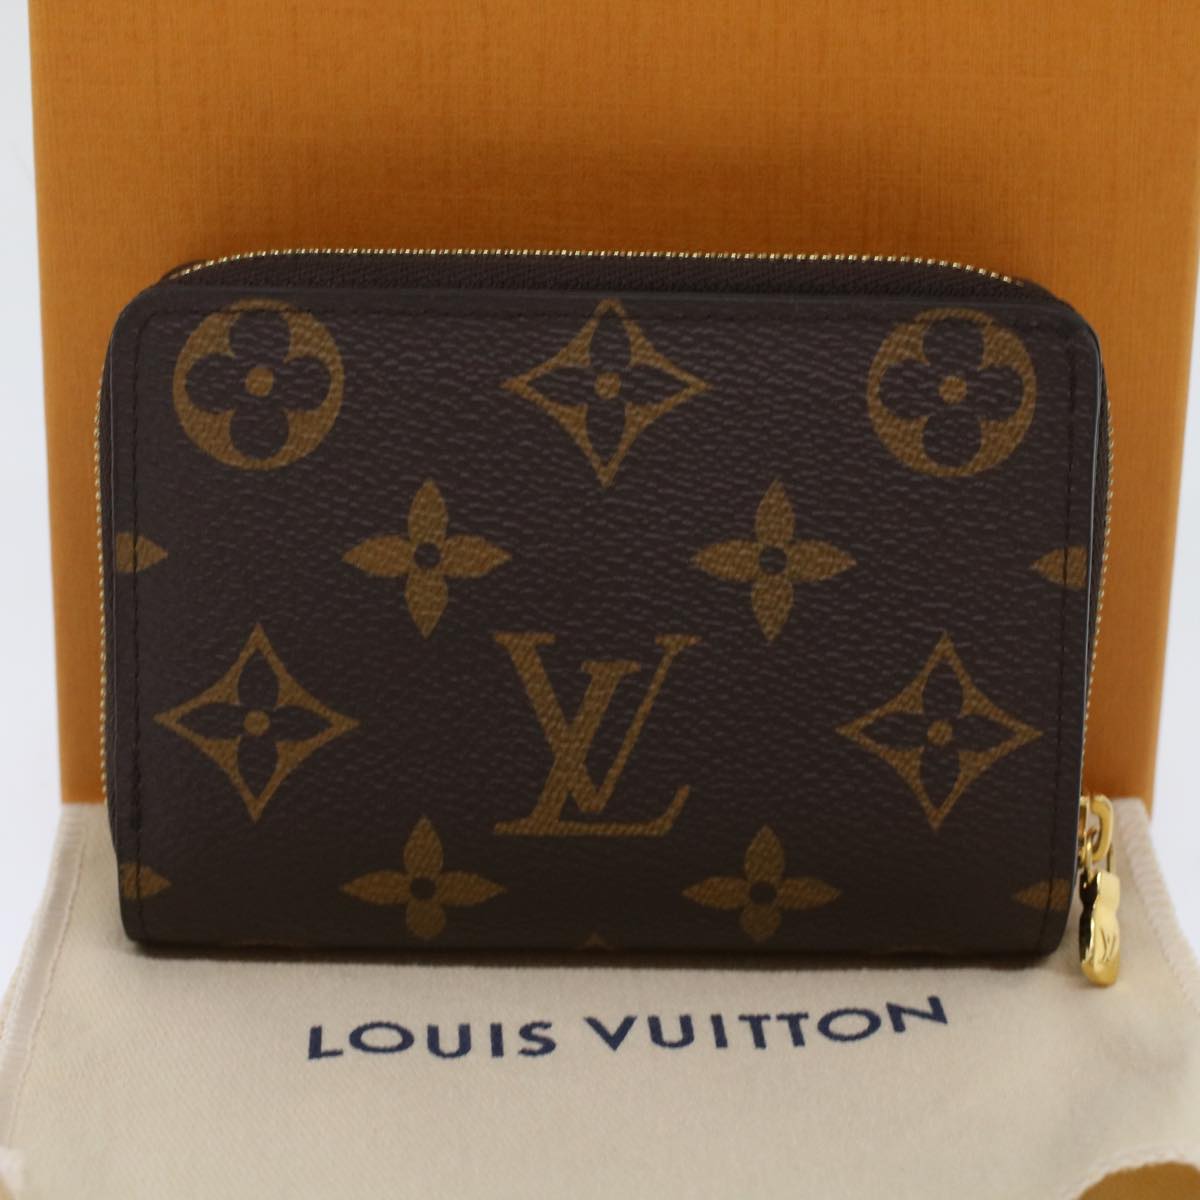 Louis Vuitton M81461 Lou Wallet, Brown, One Size